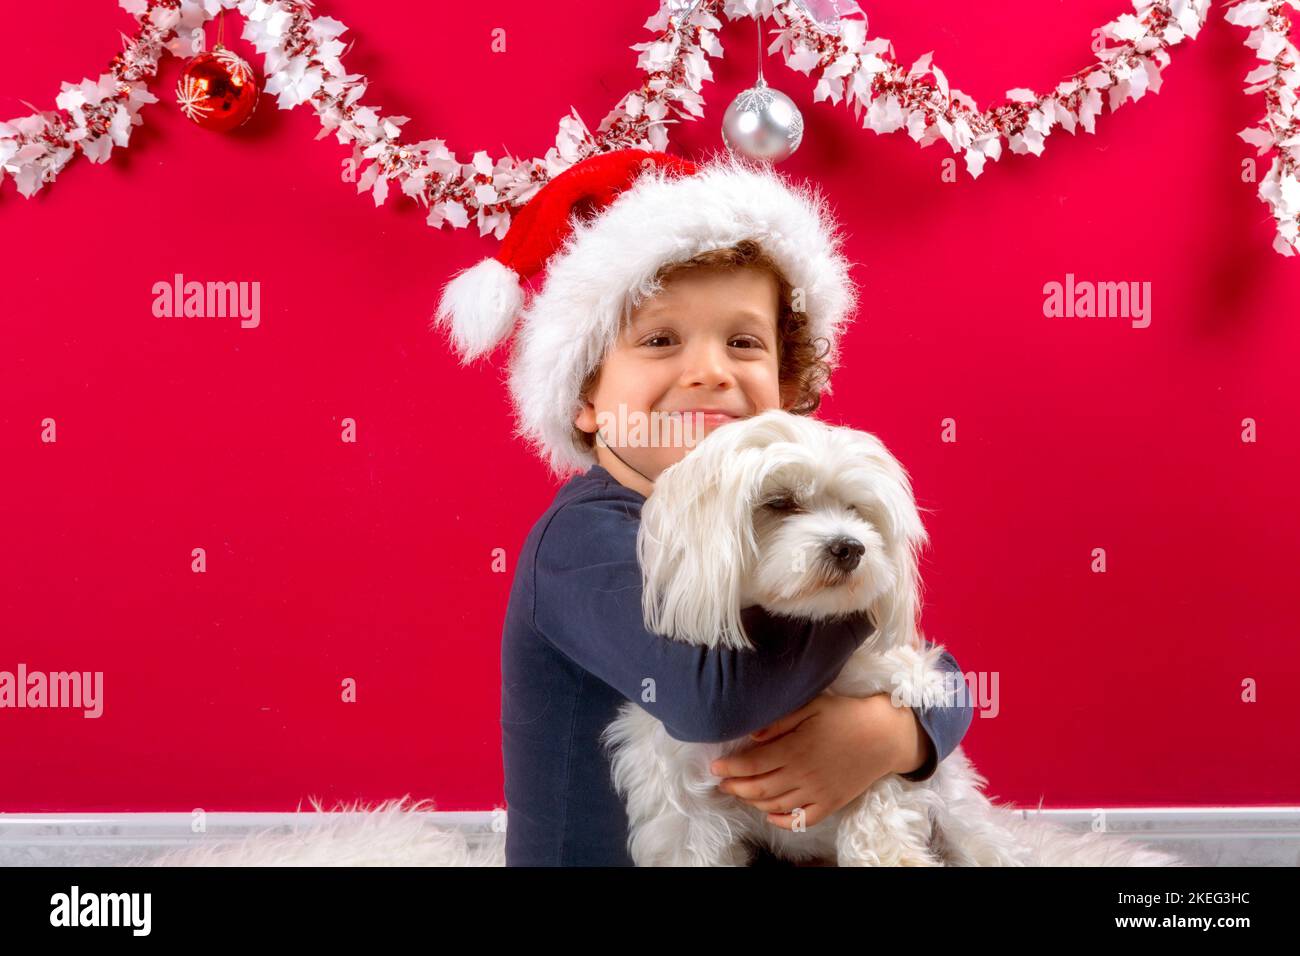 niño con sombrero de santa claus abrazando su perrito Foto de stock